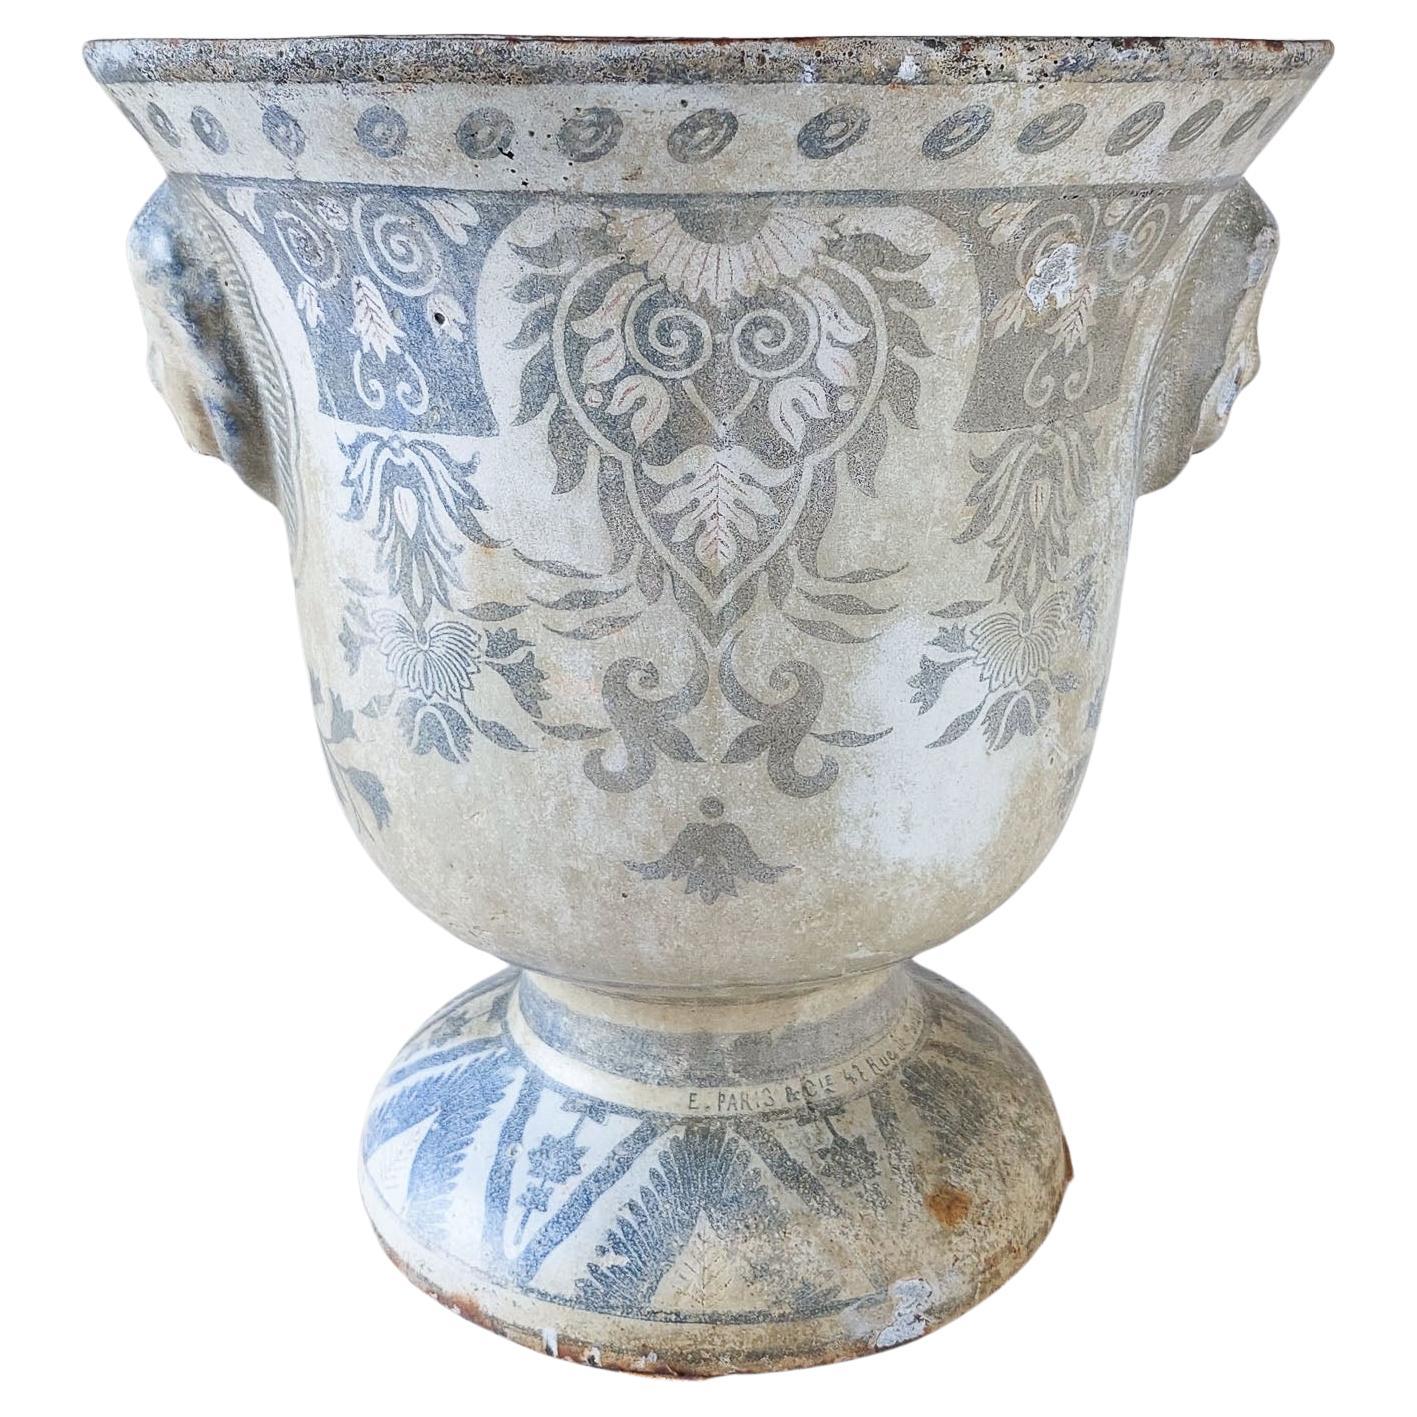 Antique white with blue enamel cast iron Paris en Cie vase